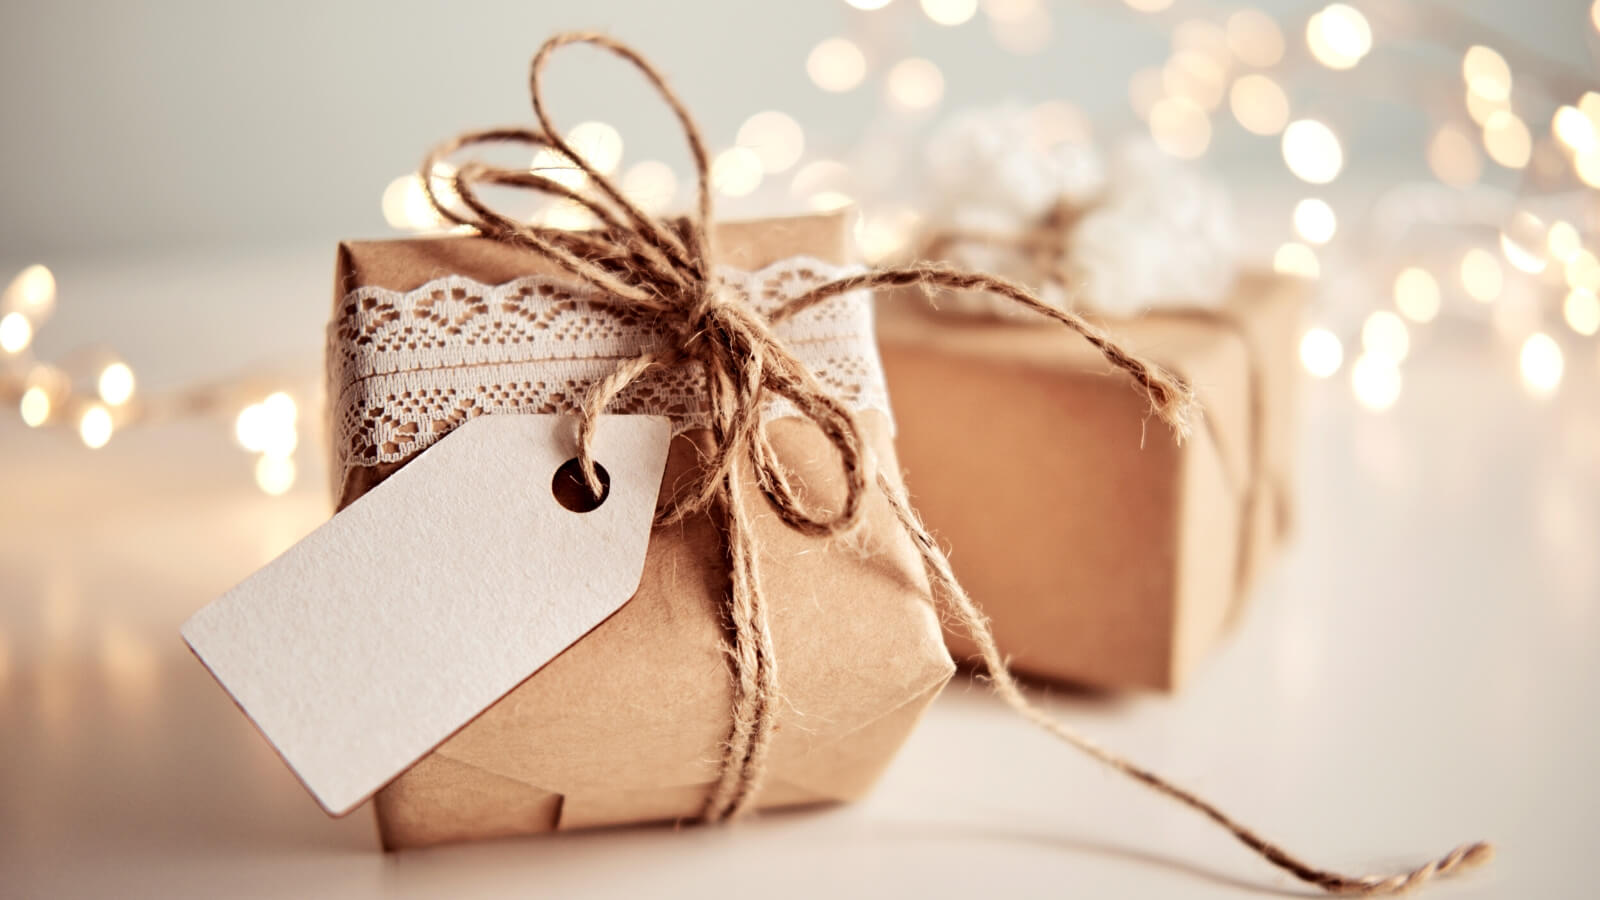 Come incartare i regali di Natale in modo sostenibile - Scatolina e Merletto